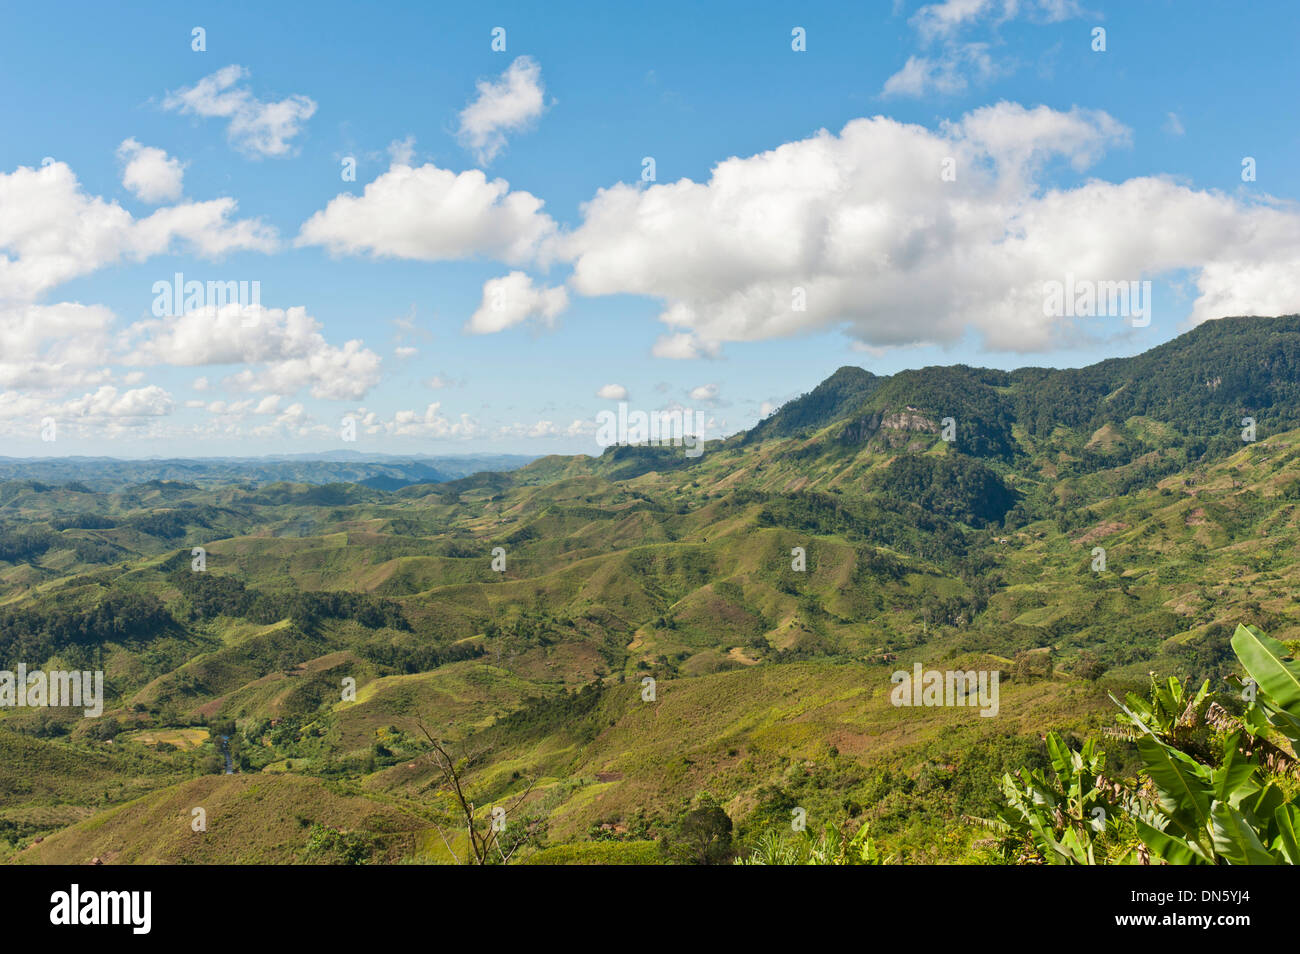 Vast mountainous, largely deforested landscape, near Manakara, Madagascar Stock Photo